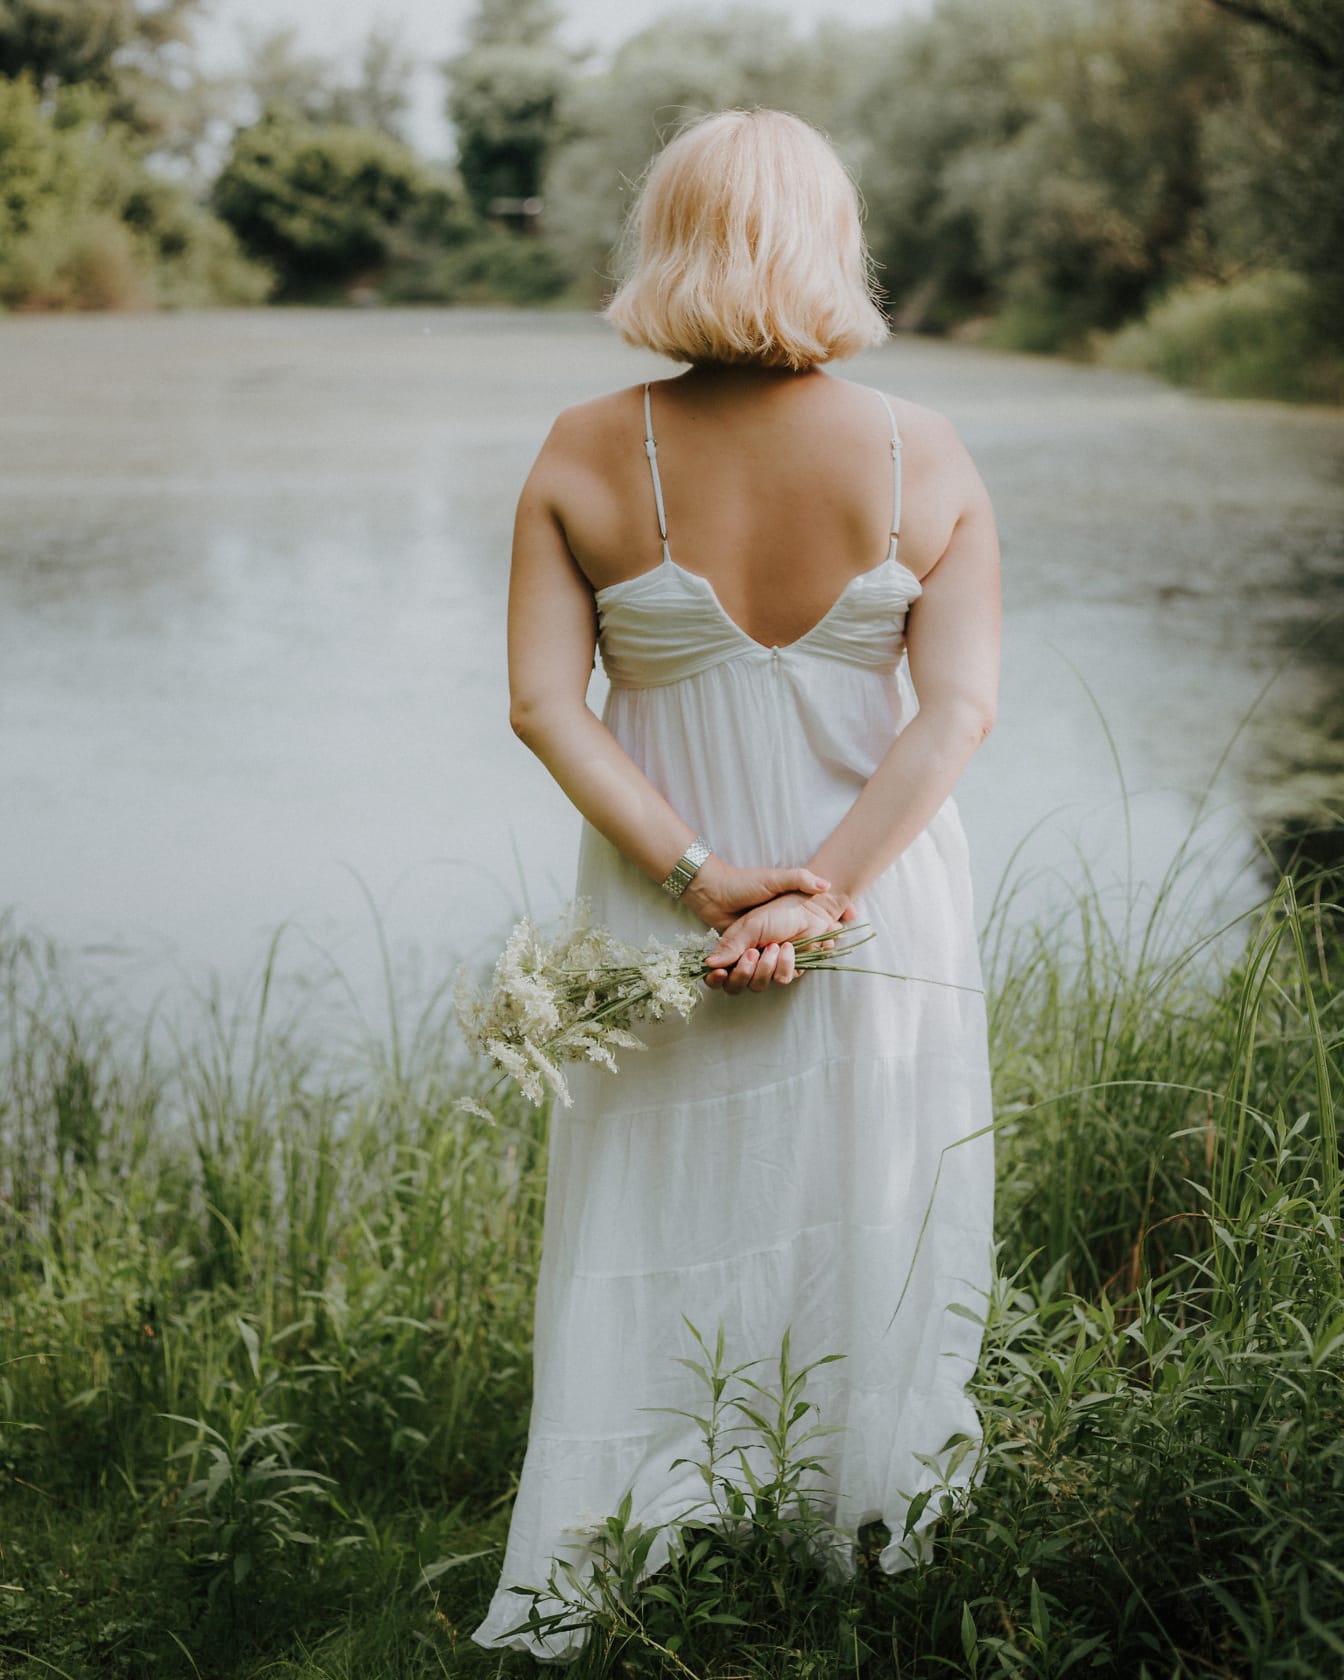 เจ้าสาวหันหลังยืนอยู่ในชุดสีขาวไร้หลังริมทะเลสาบและถือดอกไม้ในมือของเธอ